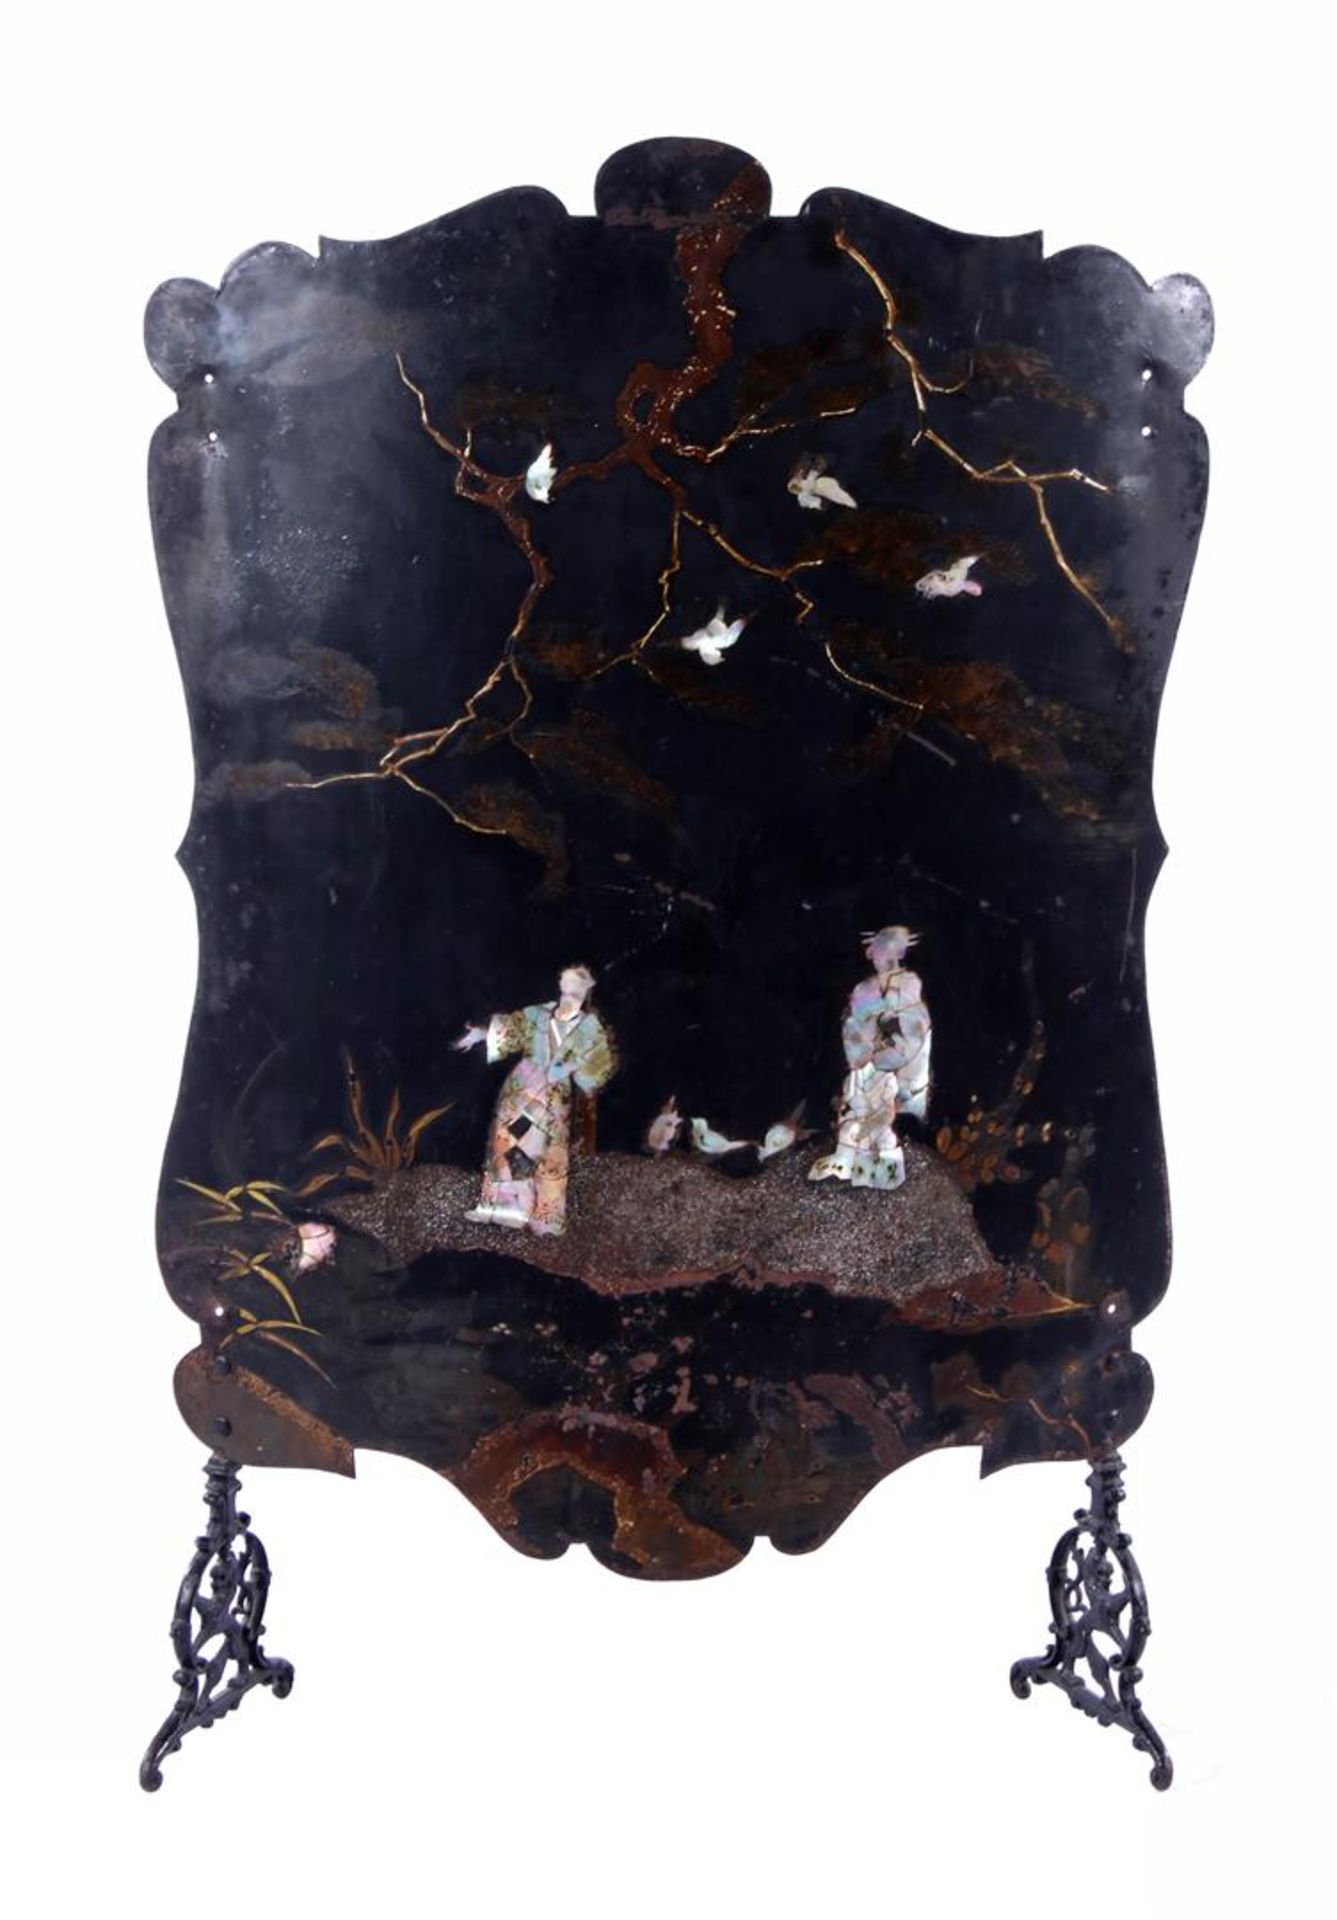 Zwartgelakt metalen gebogen haardscherm met opgelegd parelmoer decor in chinoiserie decor, omstreeks